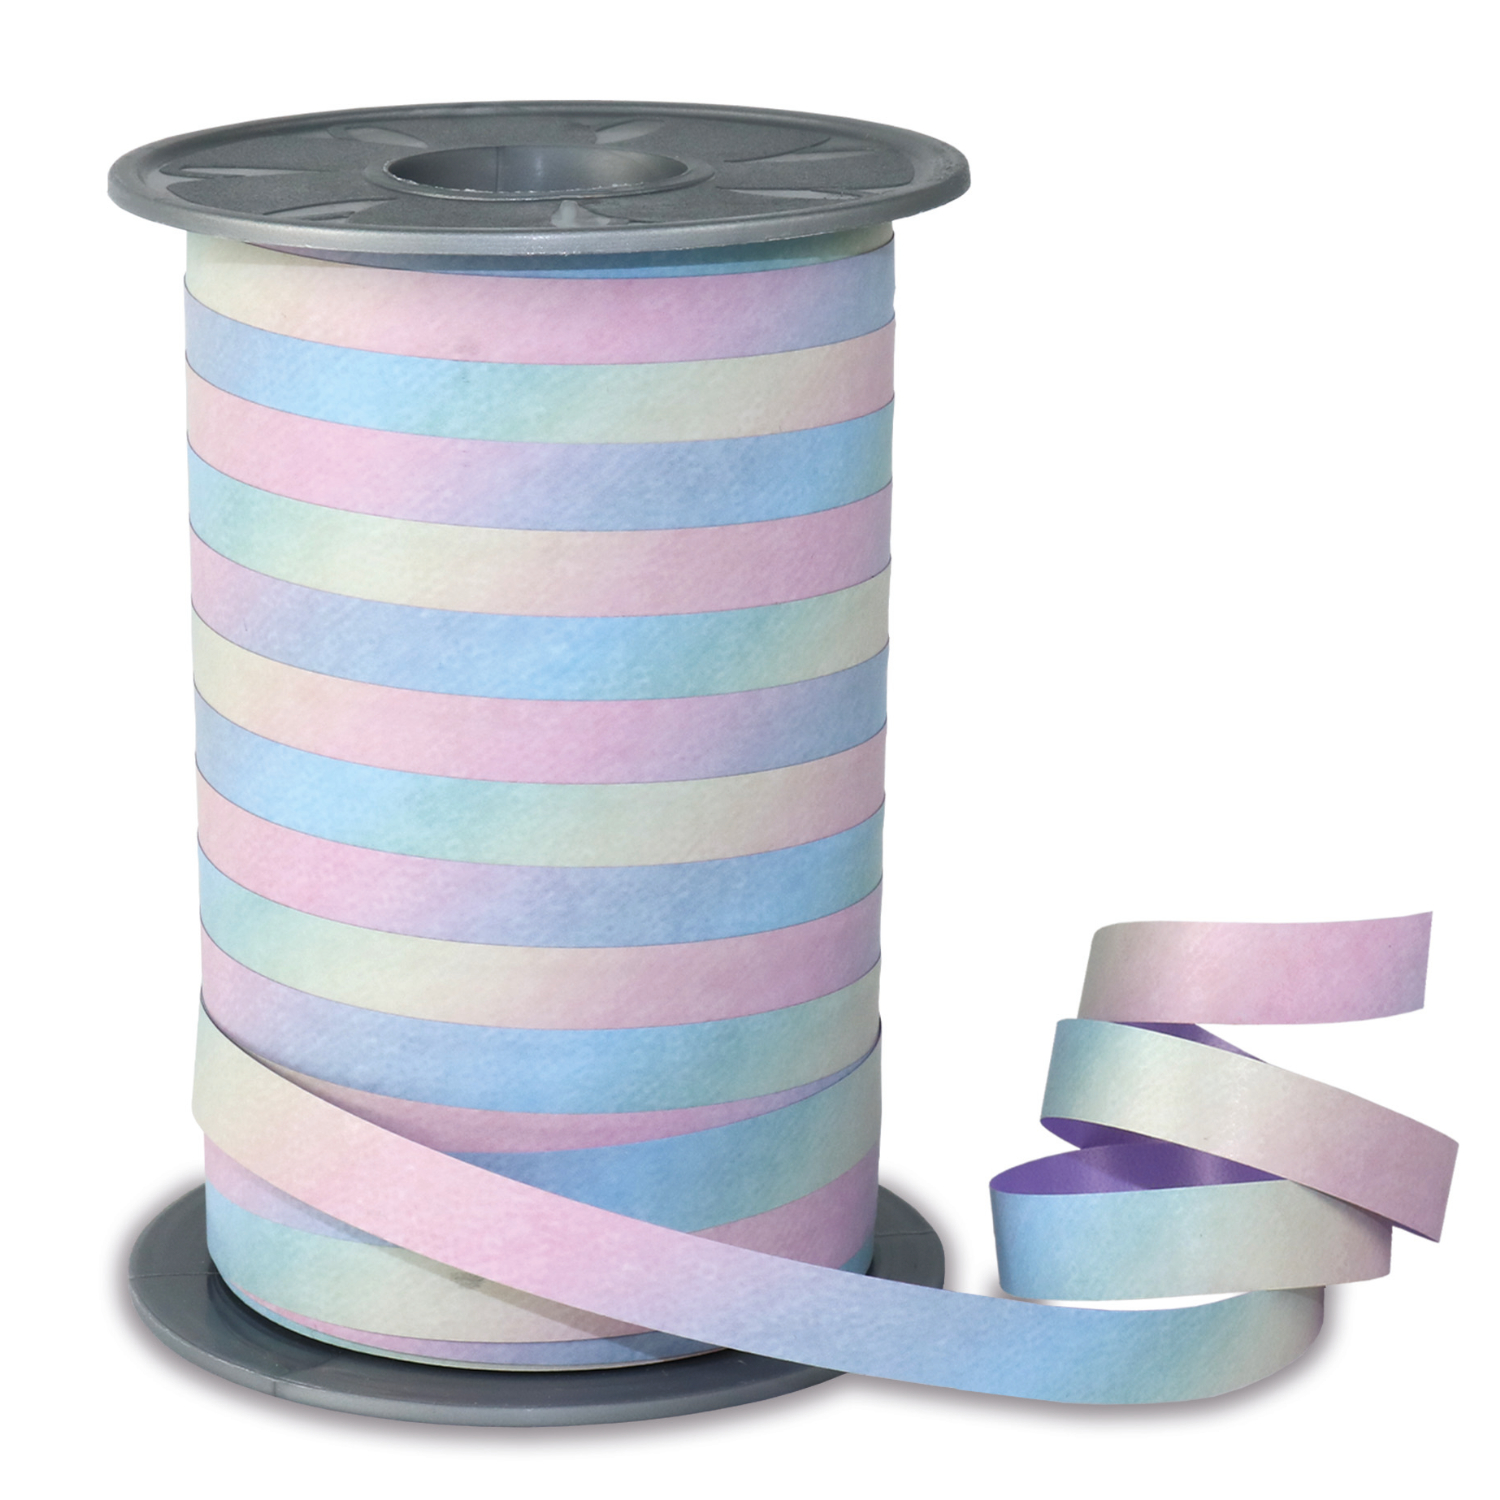 NEU Rainbow-Pastell Geschenkband, Breite 10mm, Länge 200m